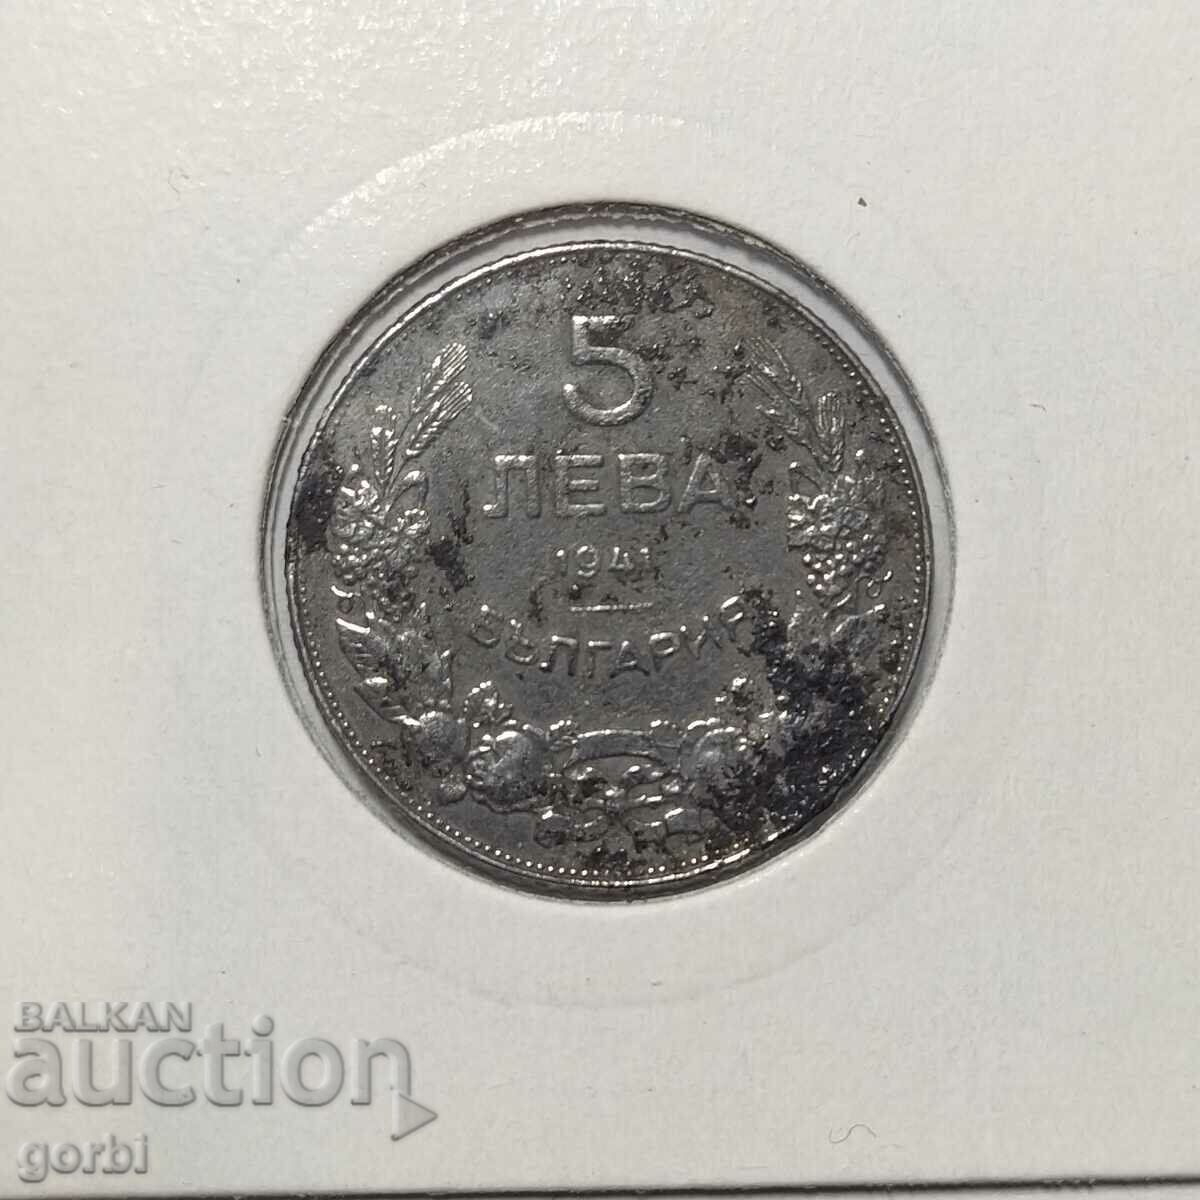 5 BGN 1941. A good collector's coin!